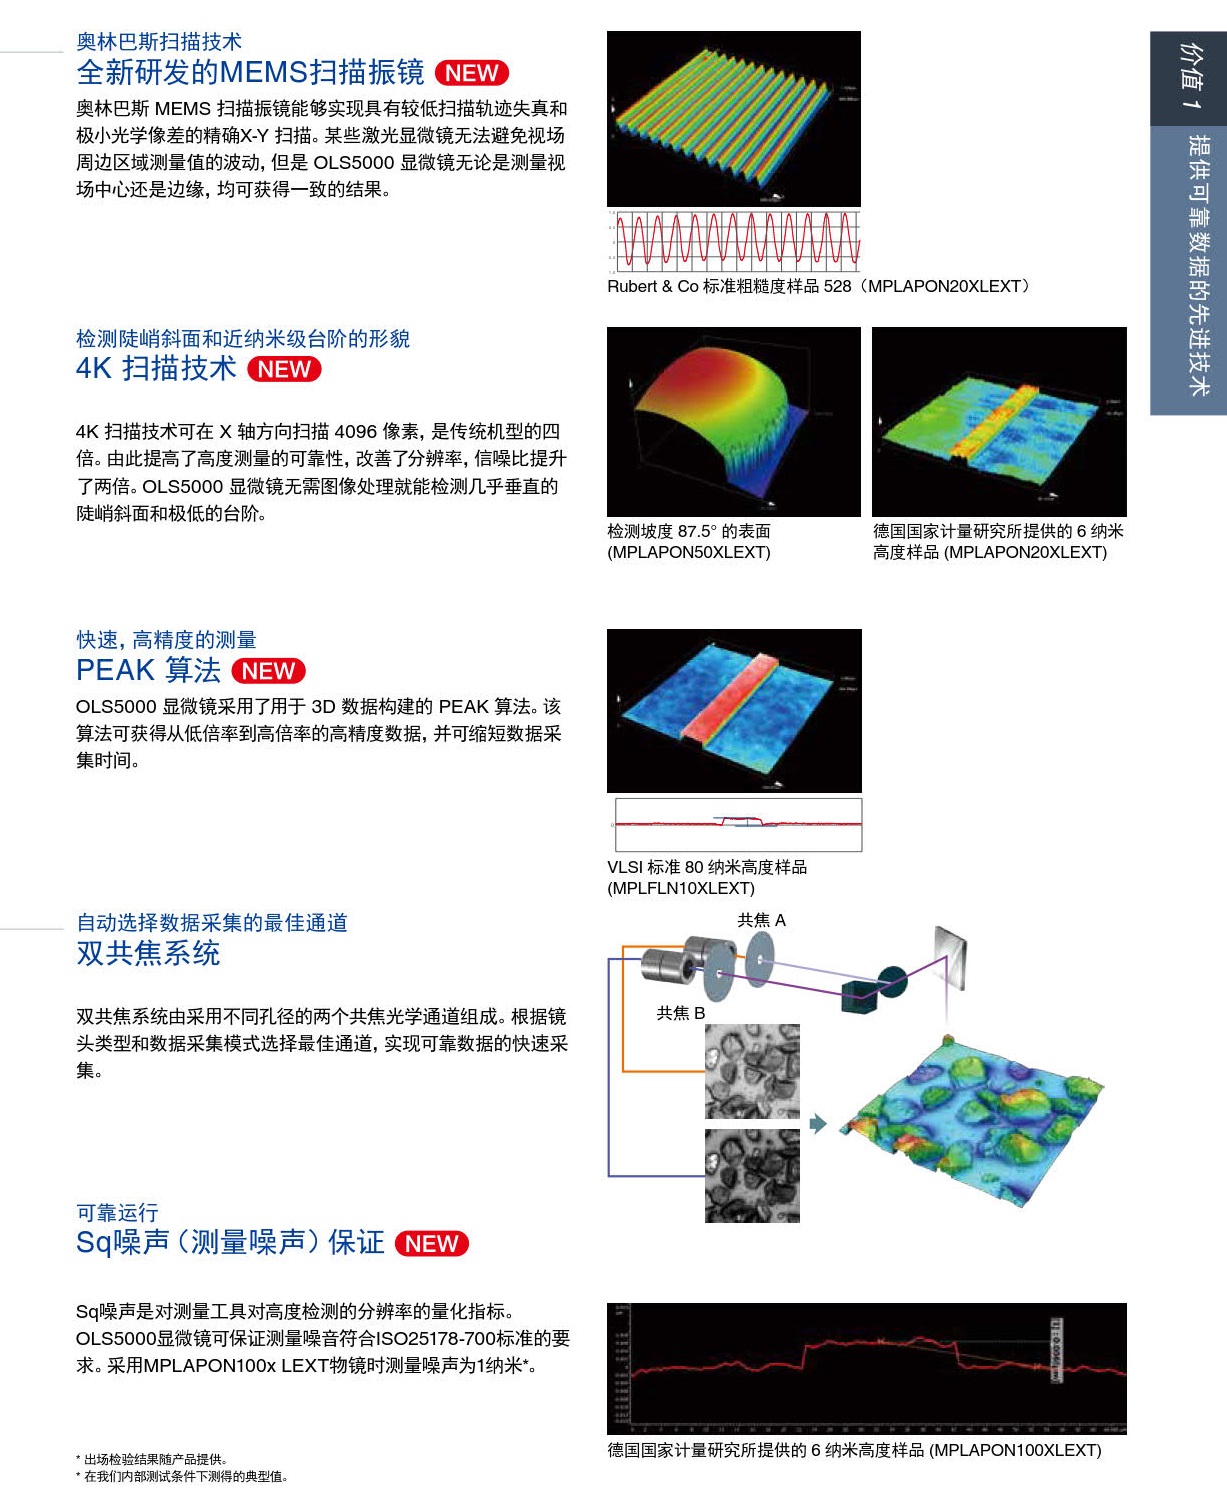  奥林巴斯OLS5000 3D 测量激光显微镜